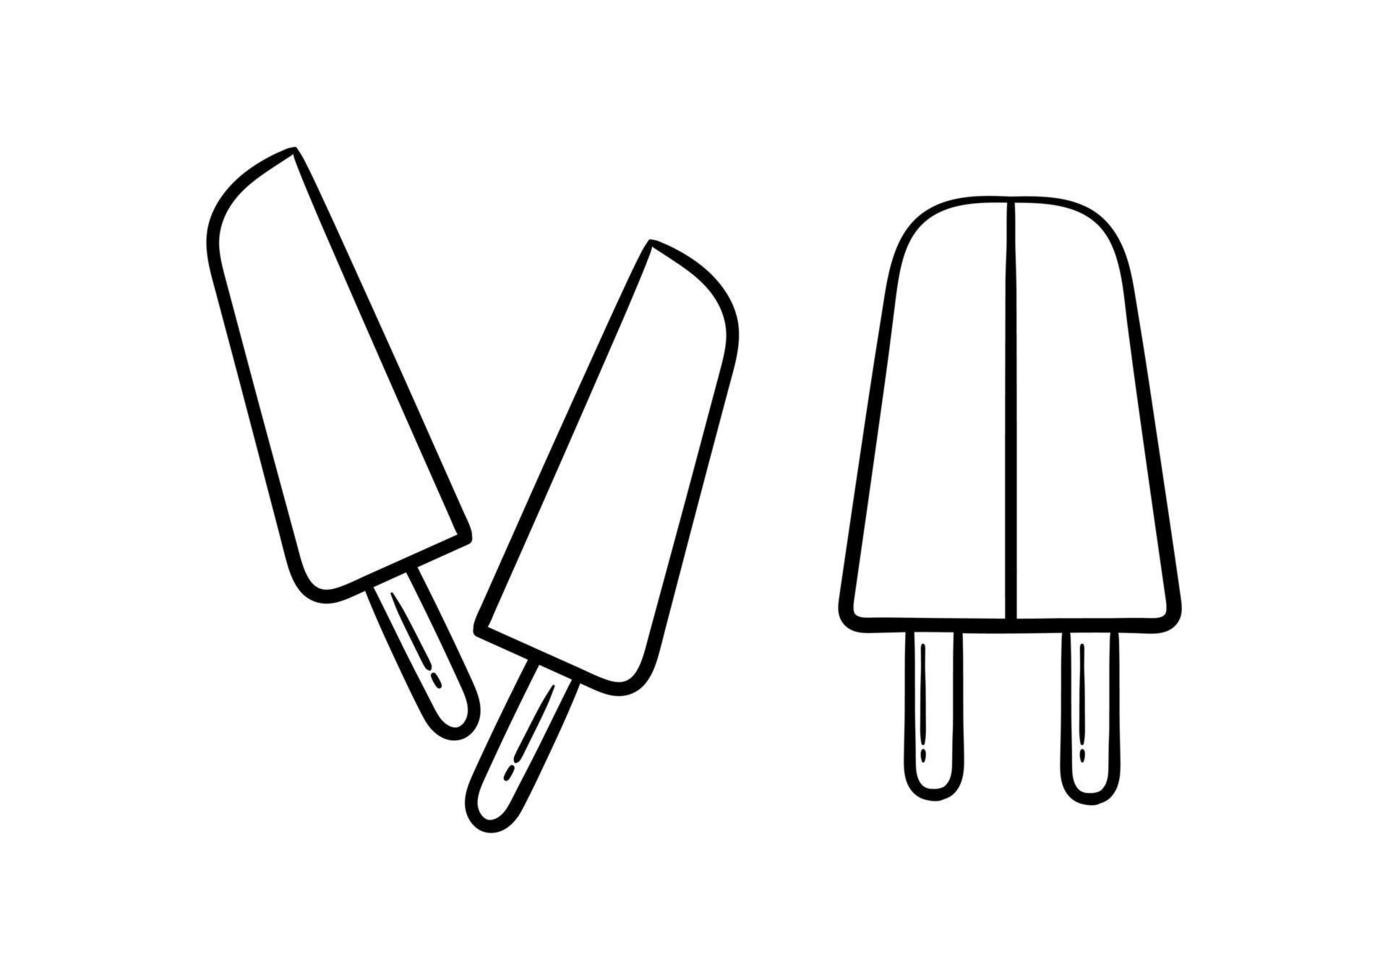 gelato disegnato a mano su sfondo bianco vettore